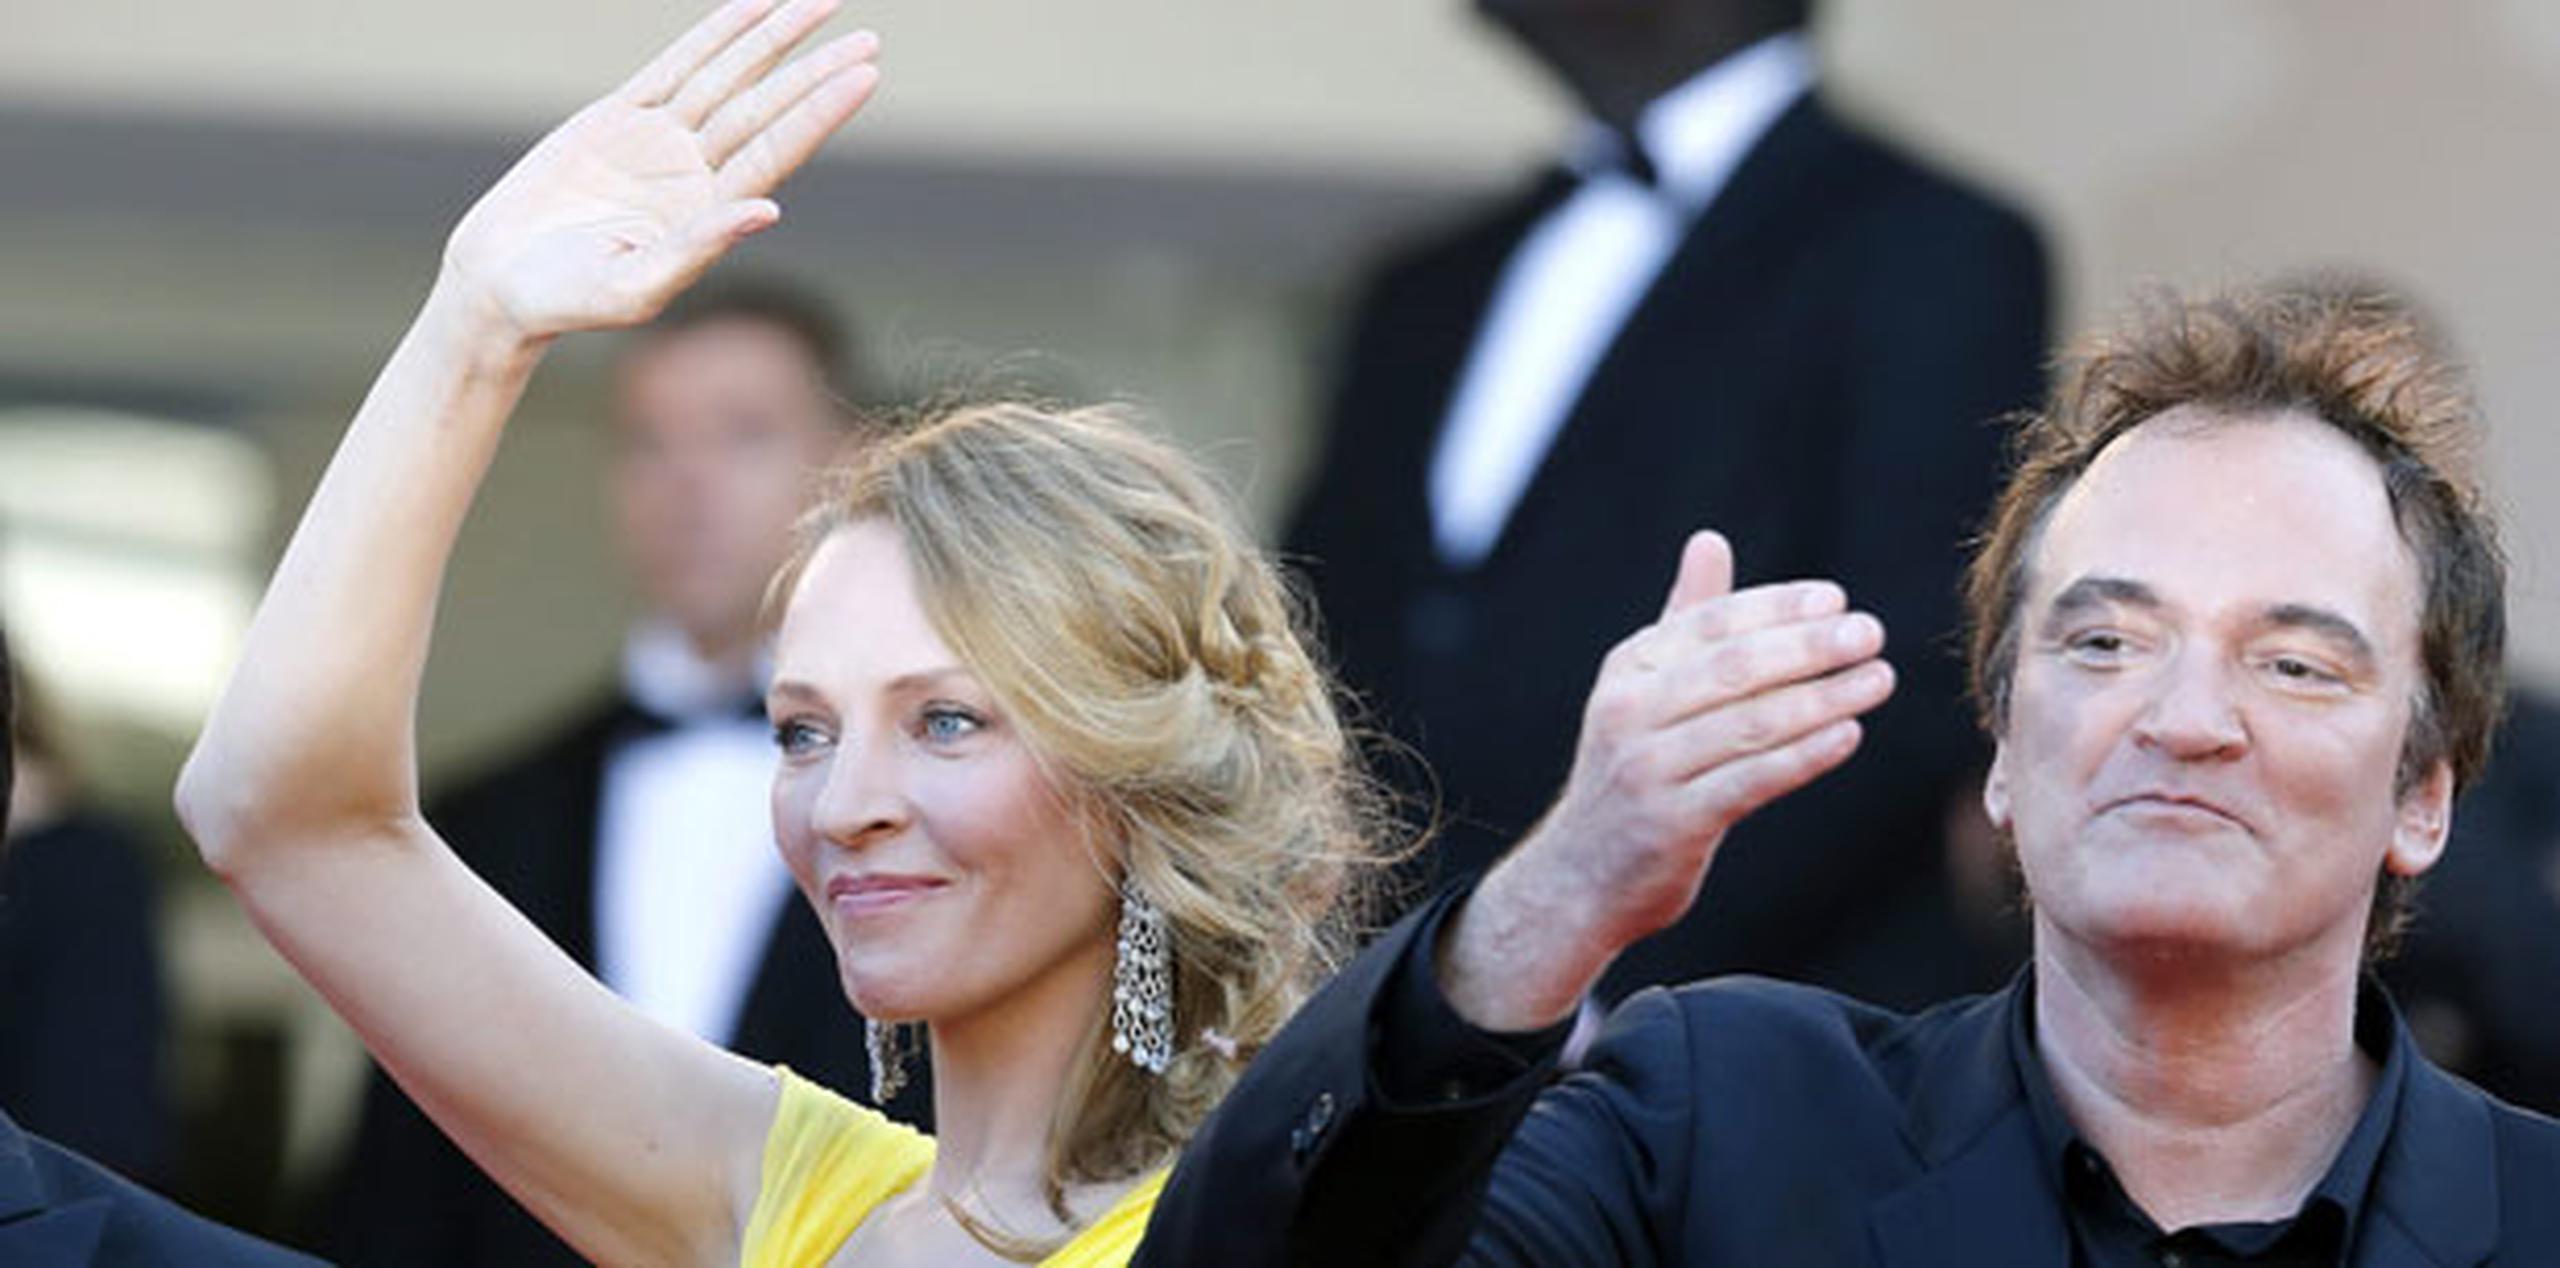 Un medio asegura que Uma Thurman y Quentin Tarantino compartieron una villa durante su participación en el Festival de Cannes. (Archivo)